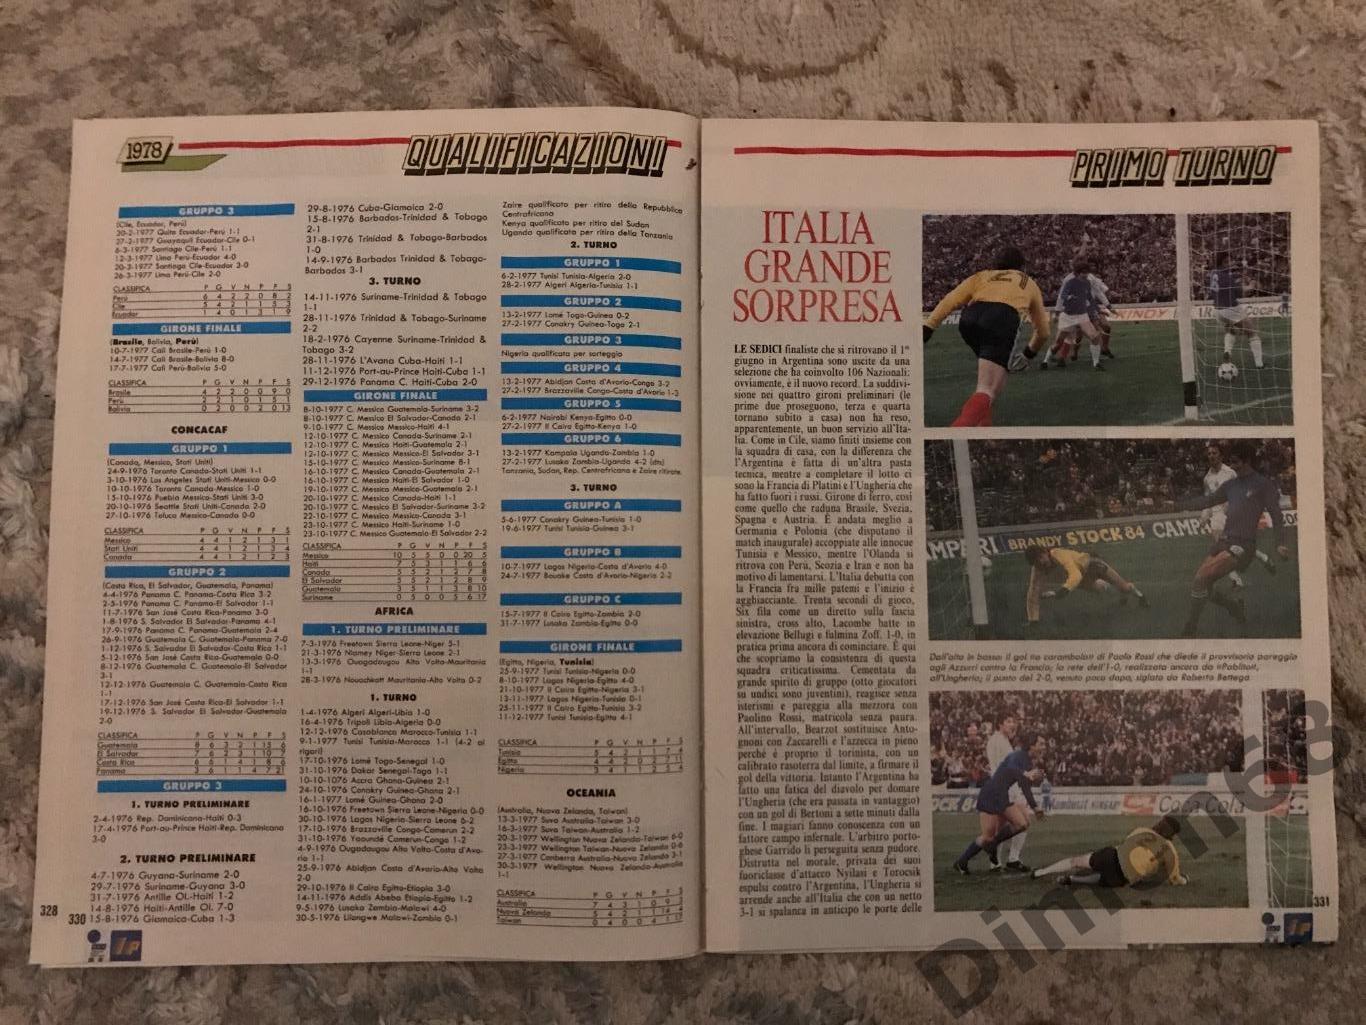 приложение к журналу гуарин спортиво всё о ч м 1978г 2